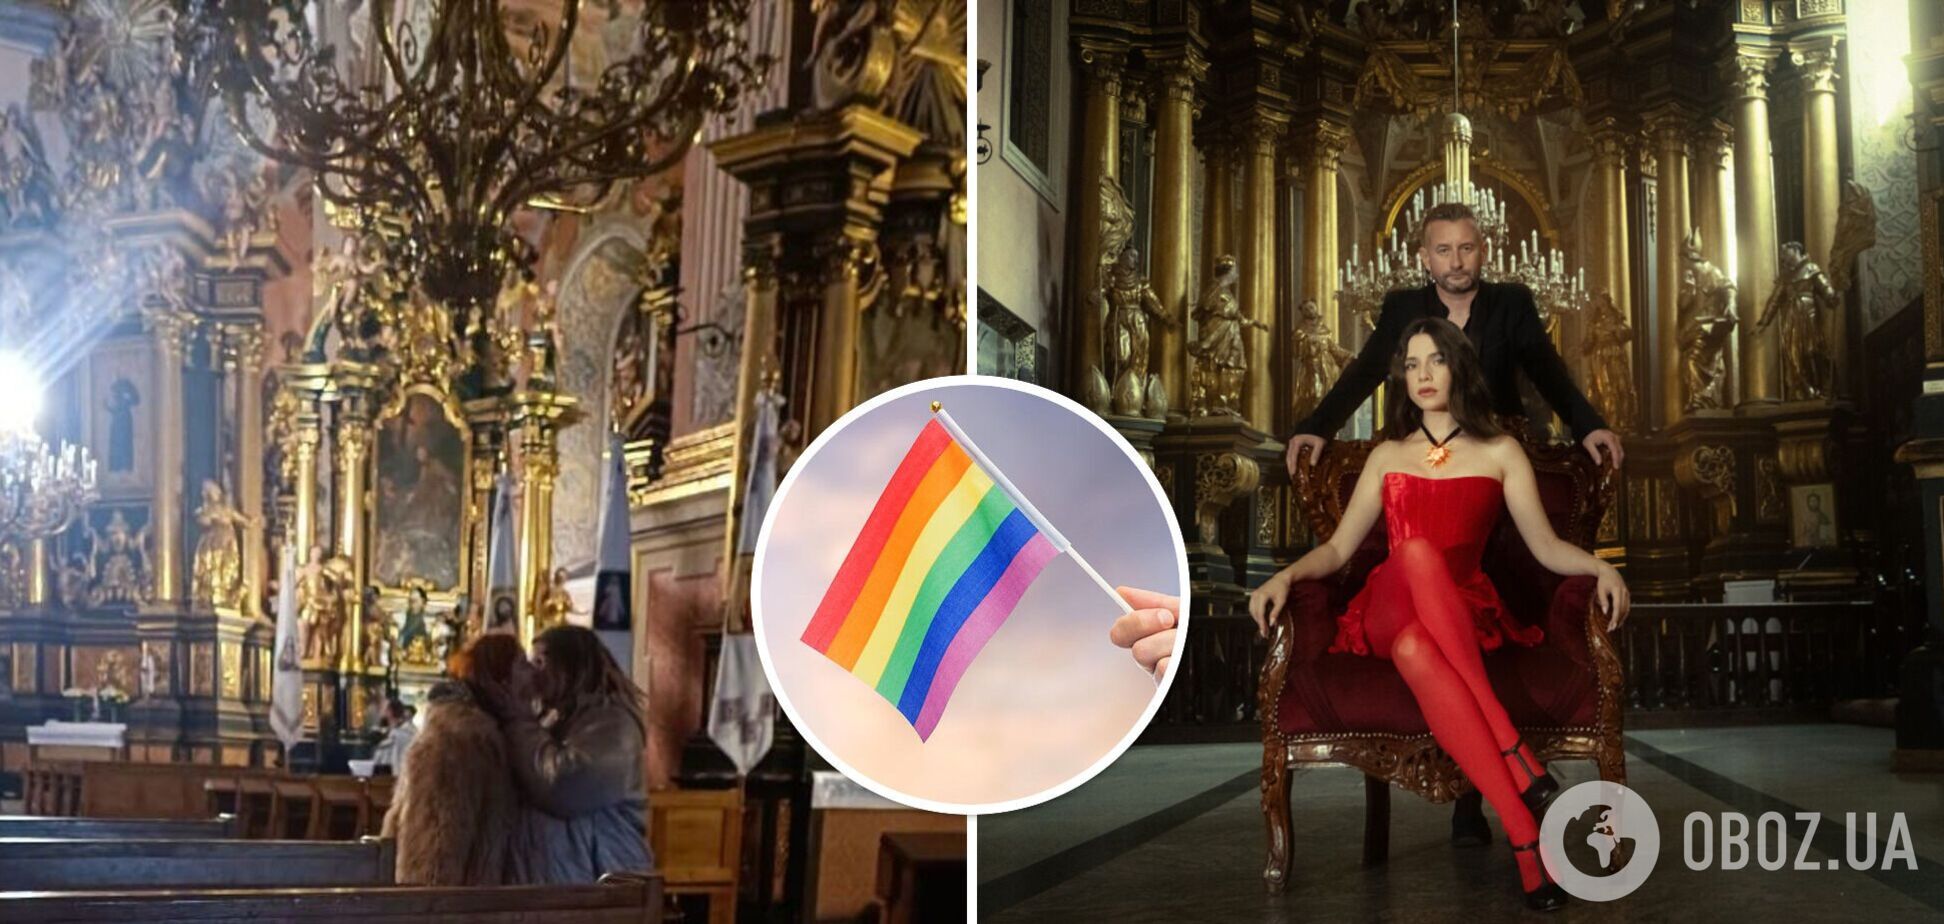 Две девушки поцеловались в церкви Львова после скандала вокруг клипа Жадана и Соловий: их поддержал ЛГБТ-военный